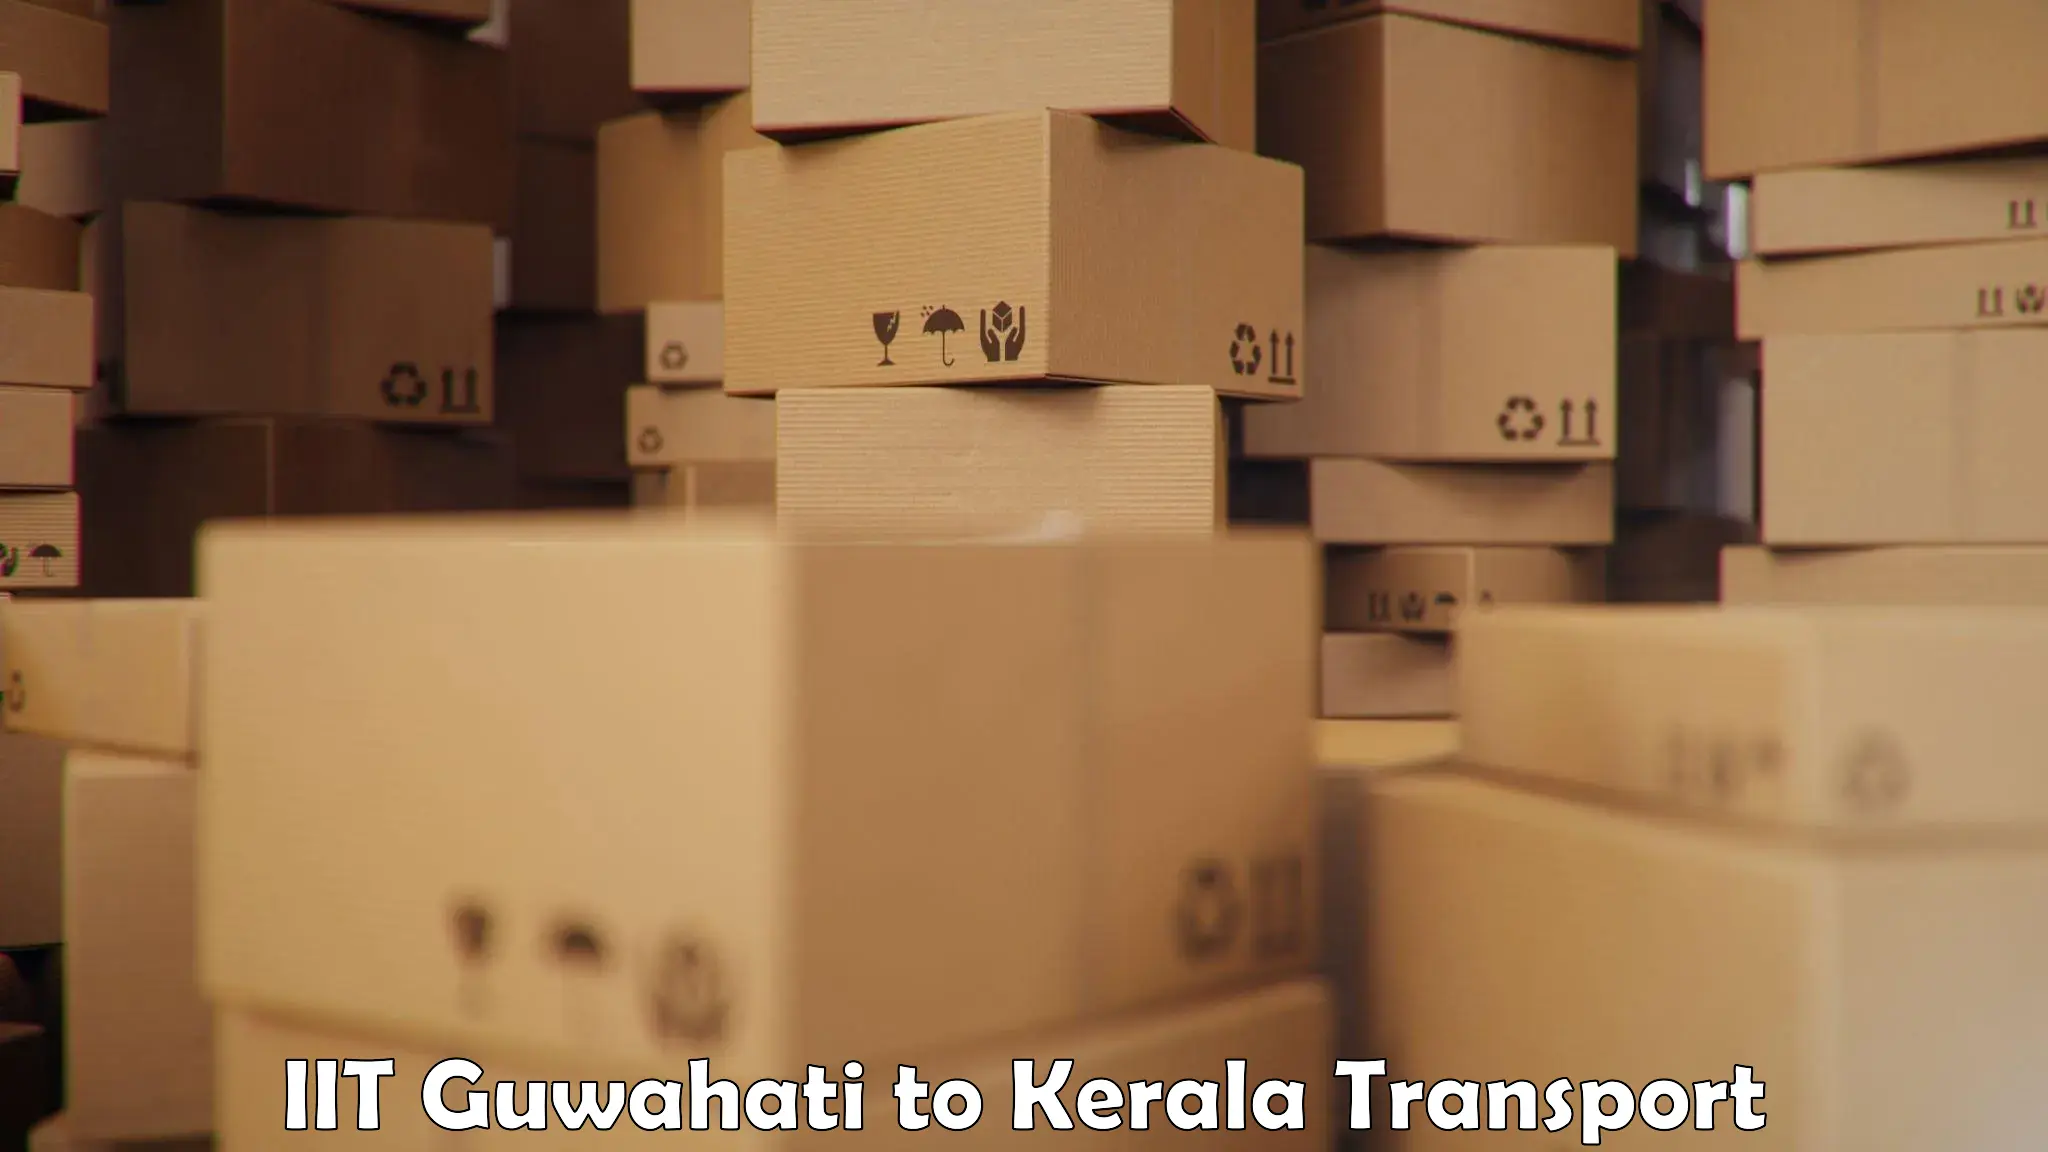 Luggage transport services IIT Guwahati to Koothattukulam